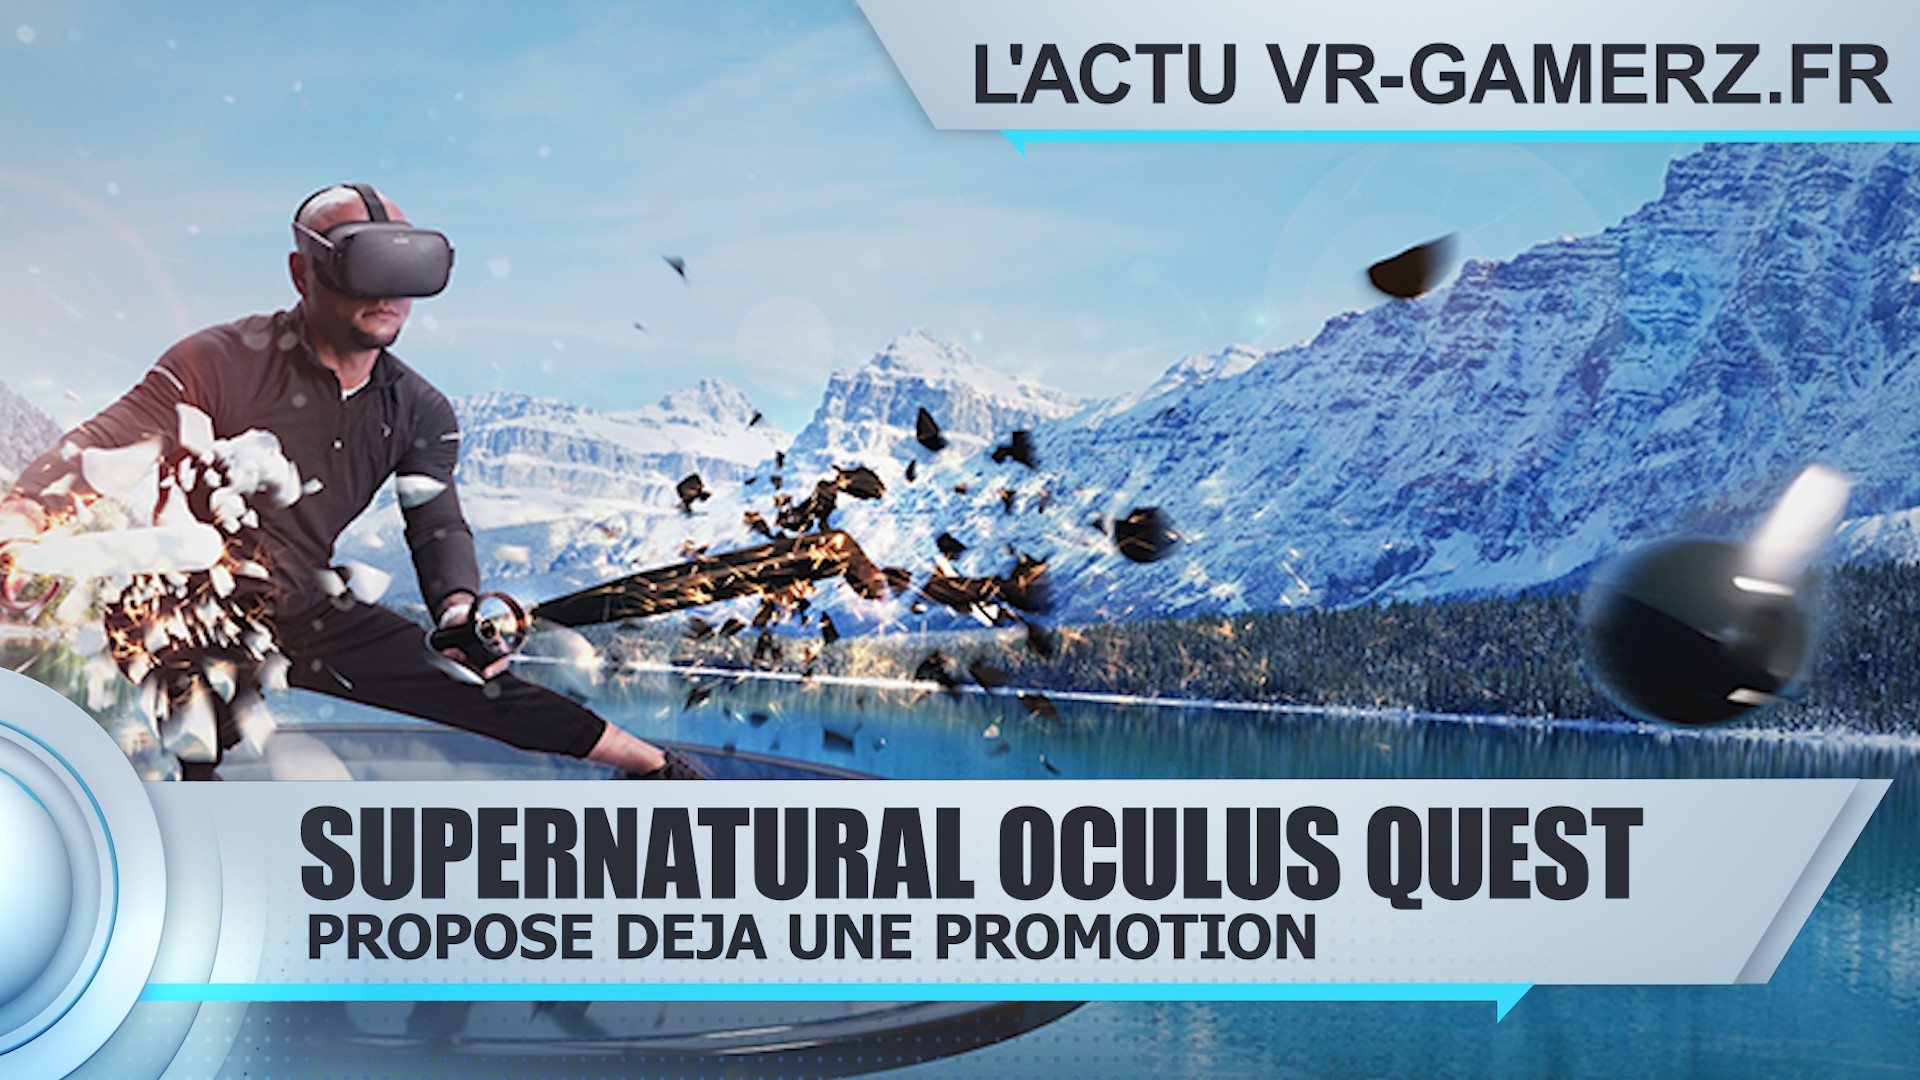 Supernatural Oculus quest propose déjà une promotion.